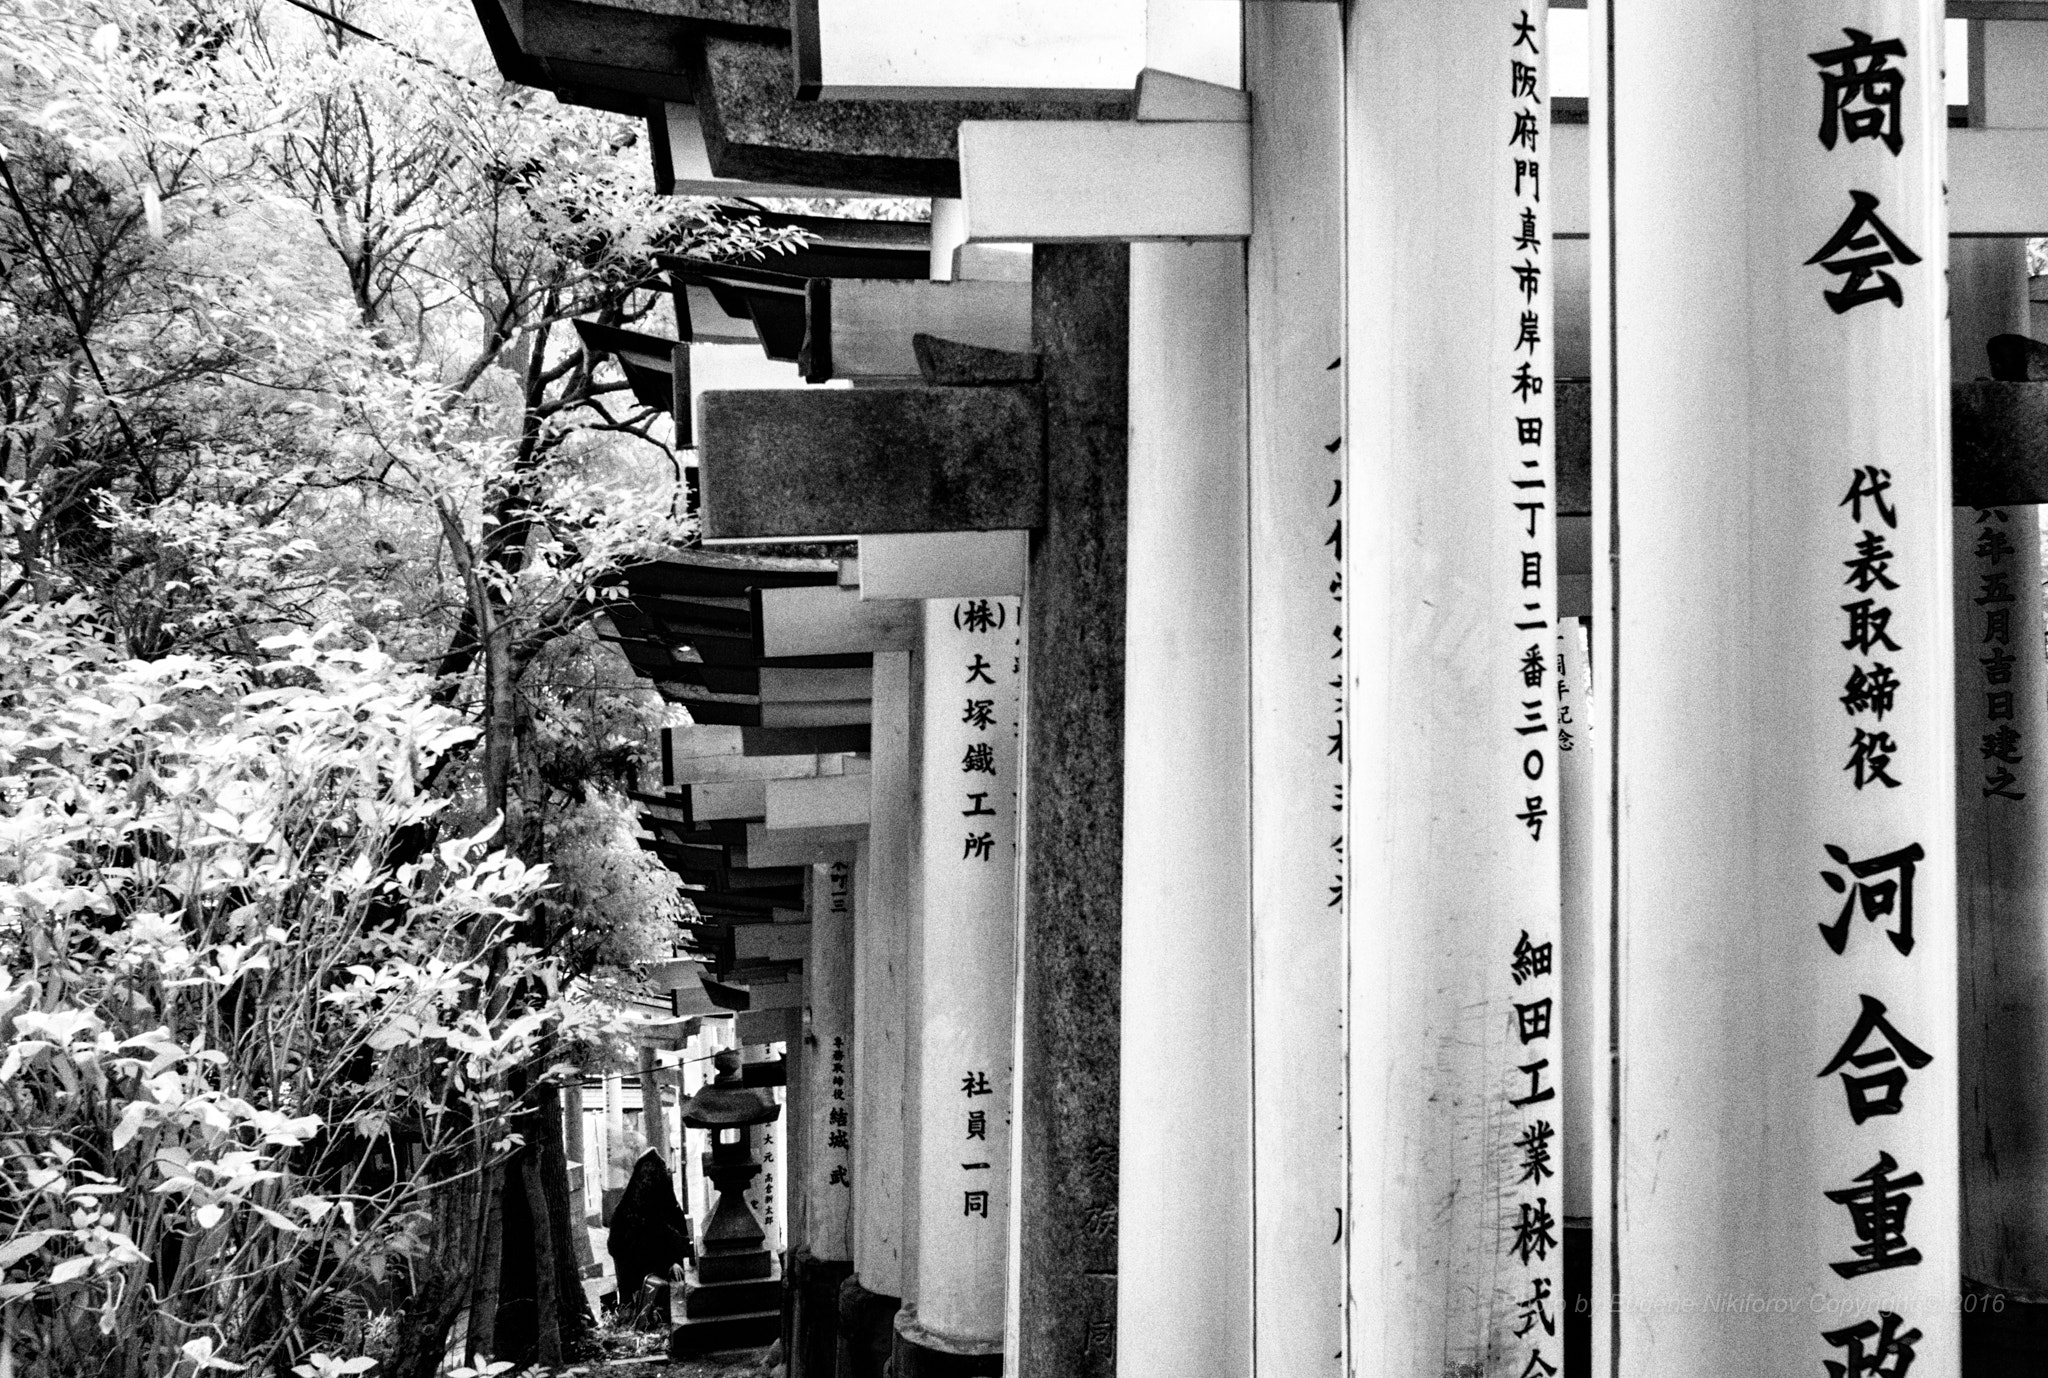 Leica M8 sample photo. Magic forest, fushimi inari taisha temple, kyoto photography